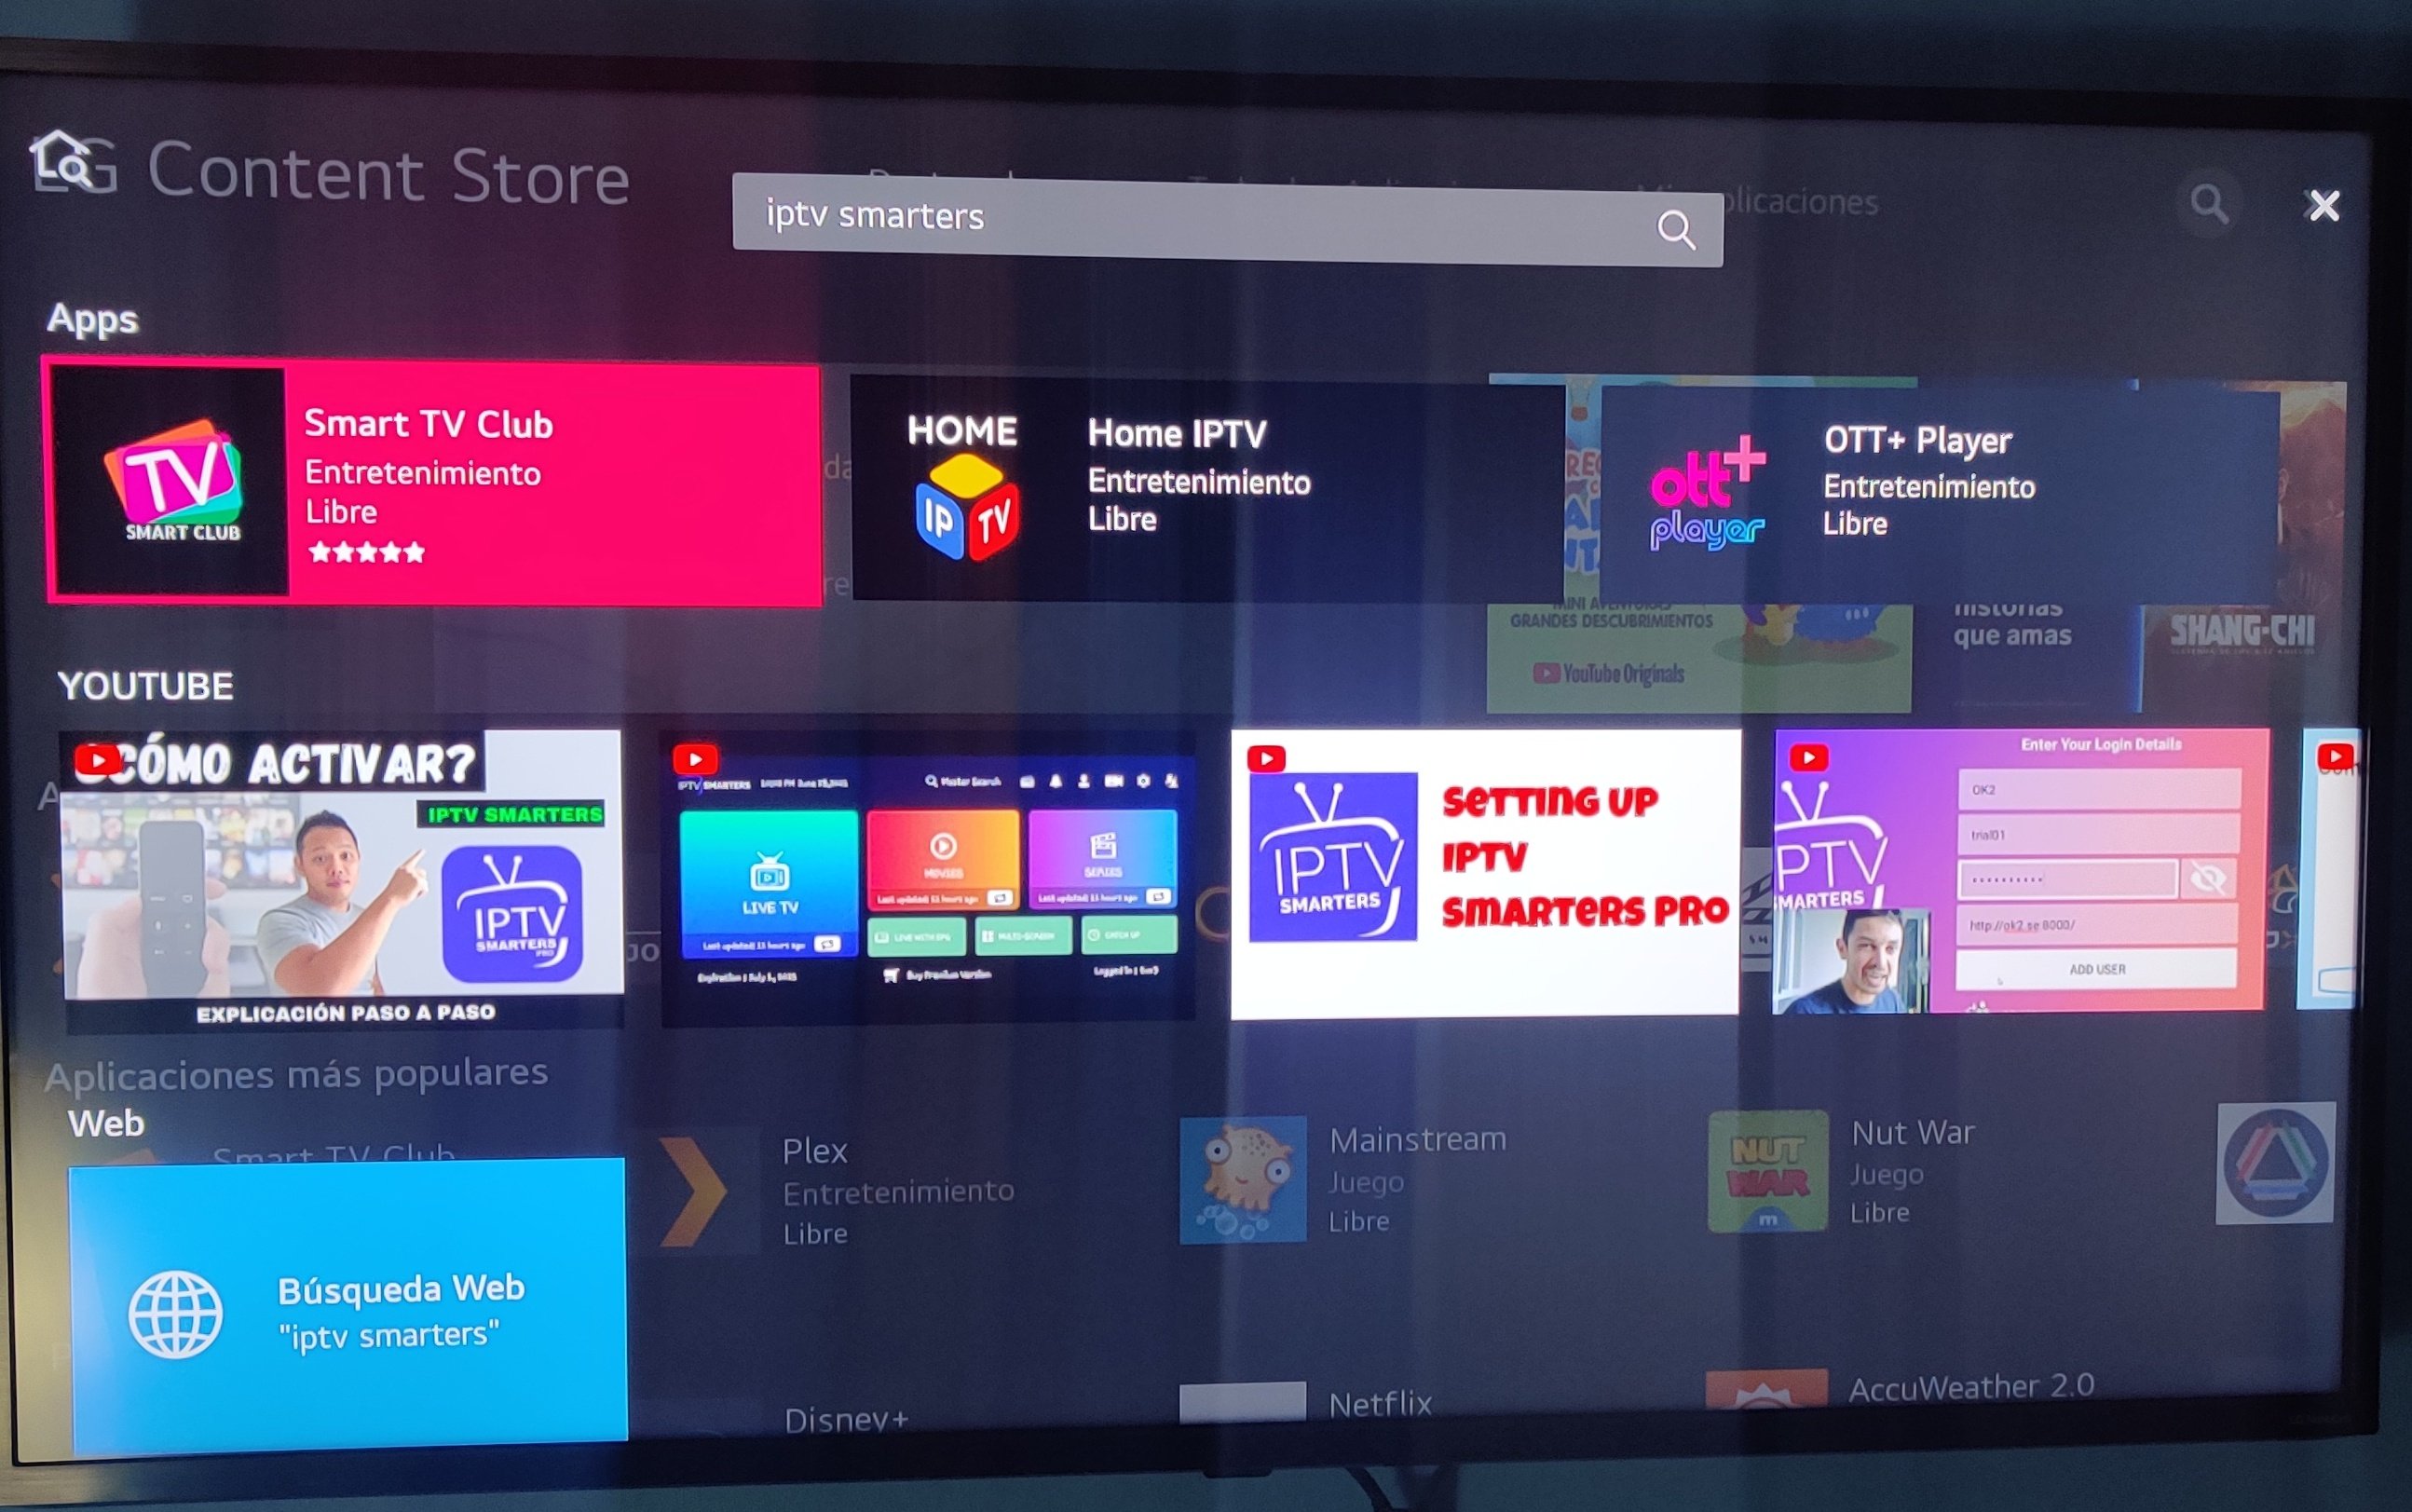 IPTV Smarters Pro es expulsada de Play Store: APK y alternativas